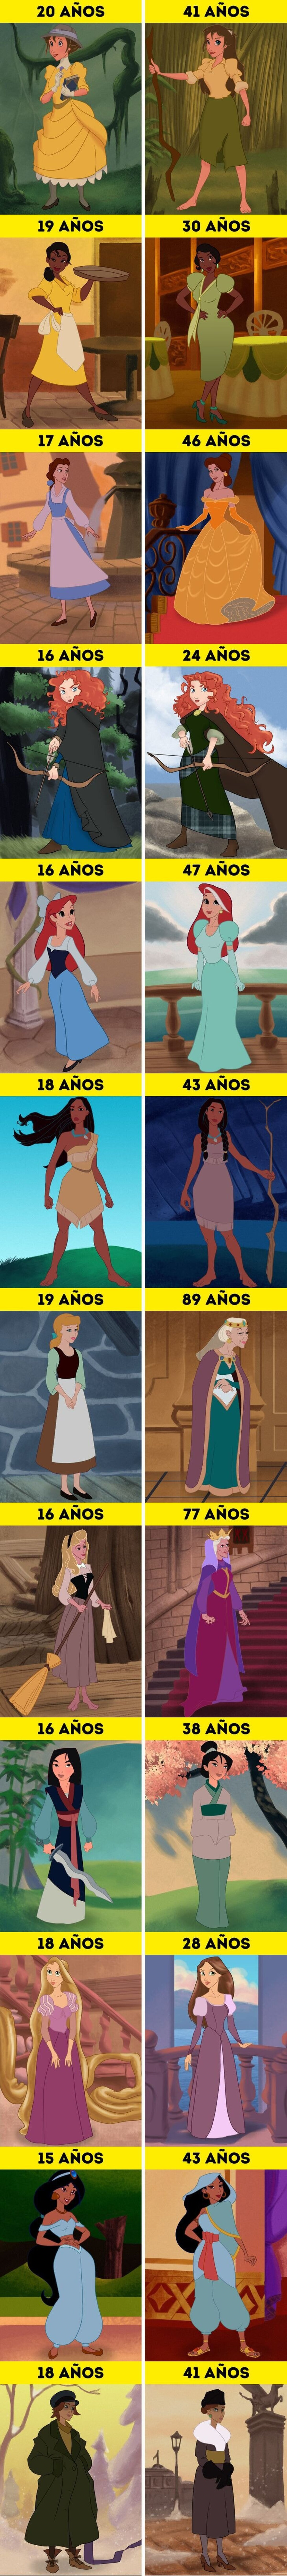 GALERÍA: Cómo se verían 12 princesas de Disney años después del final de sus películas (Cenicienta tendría 89 años)